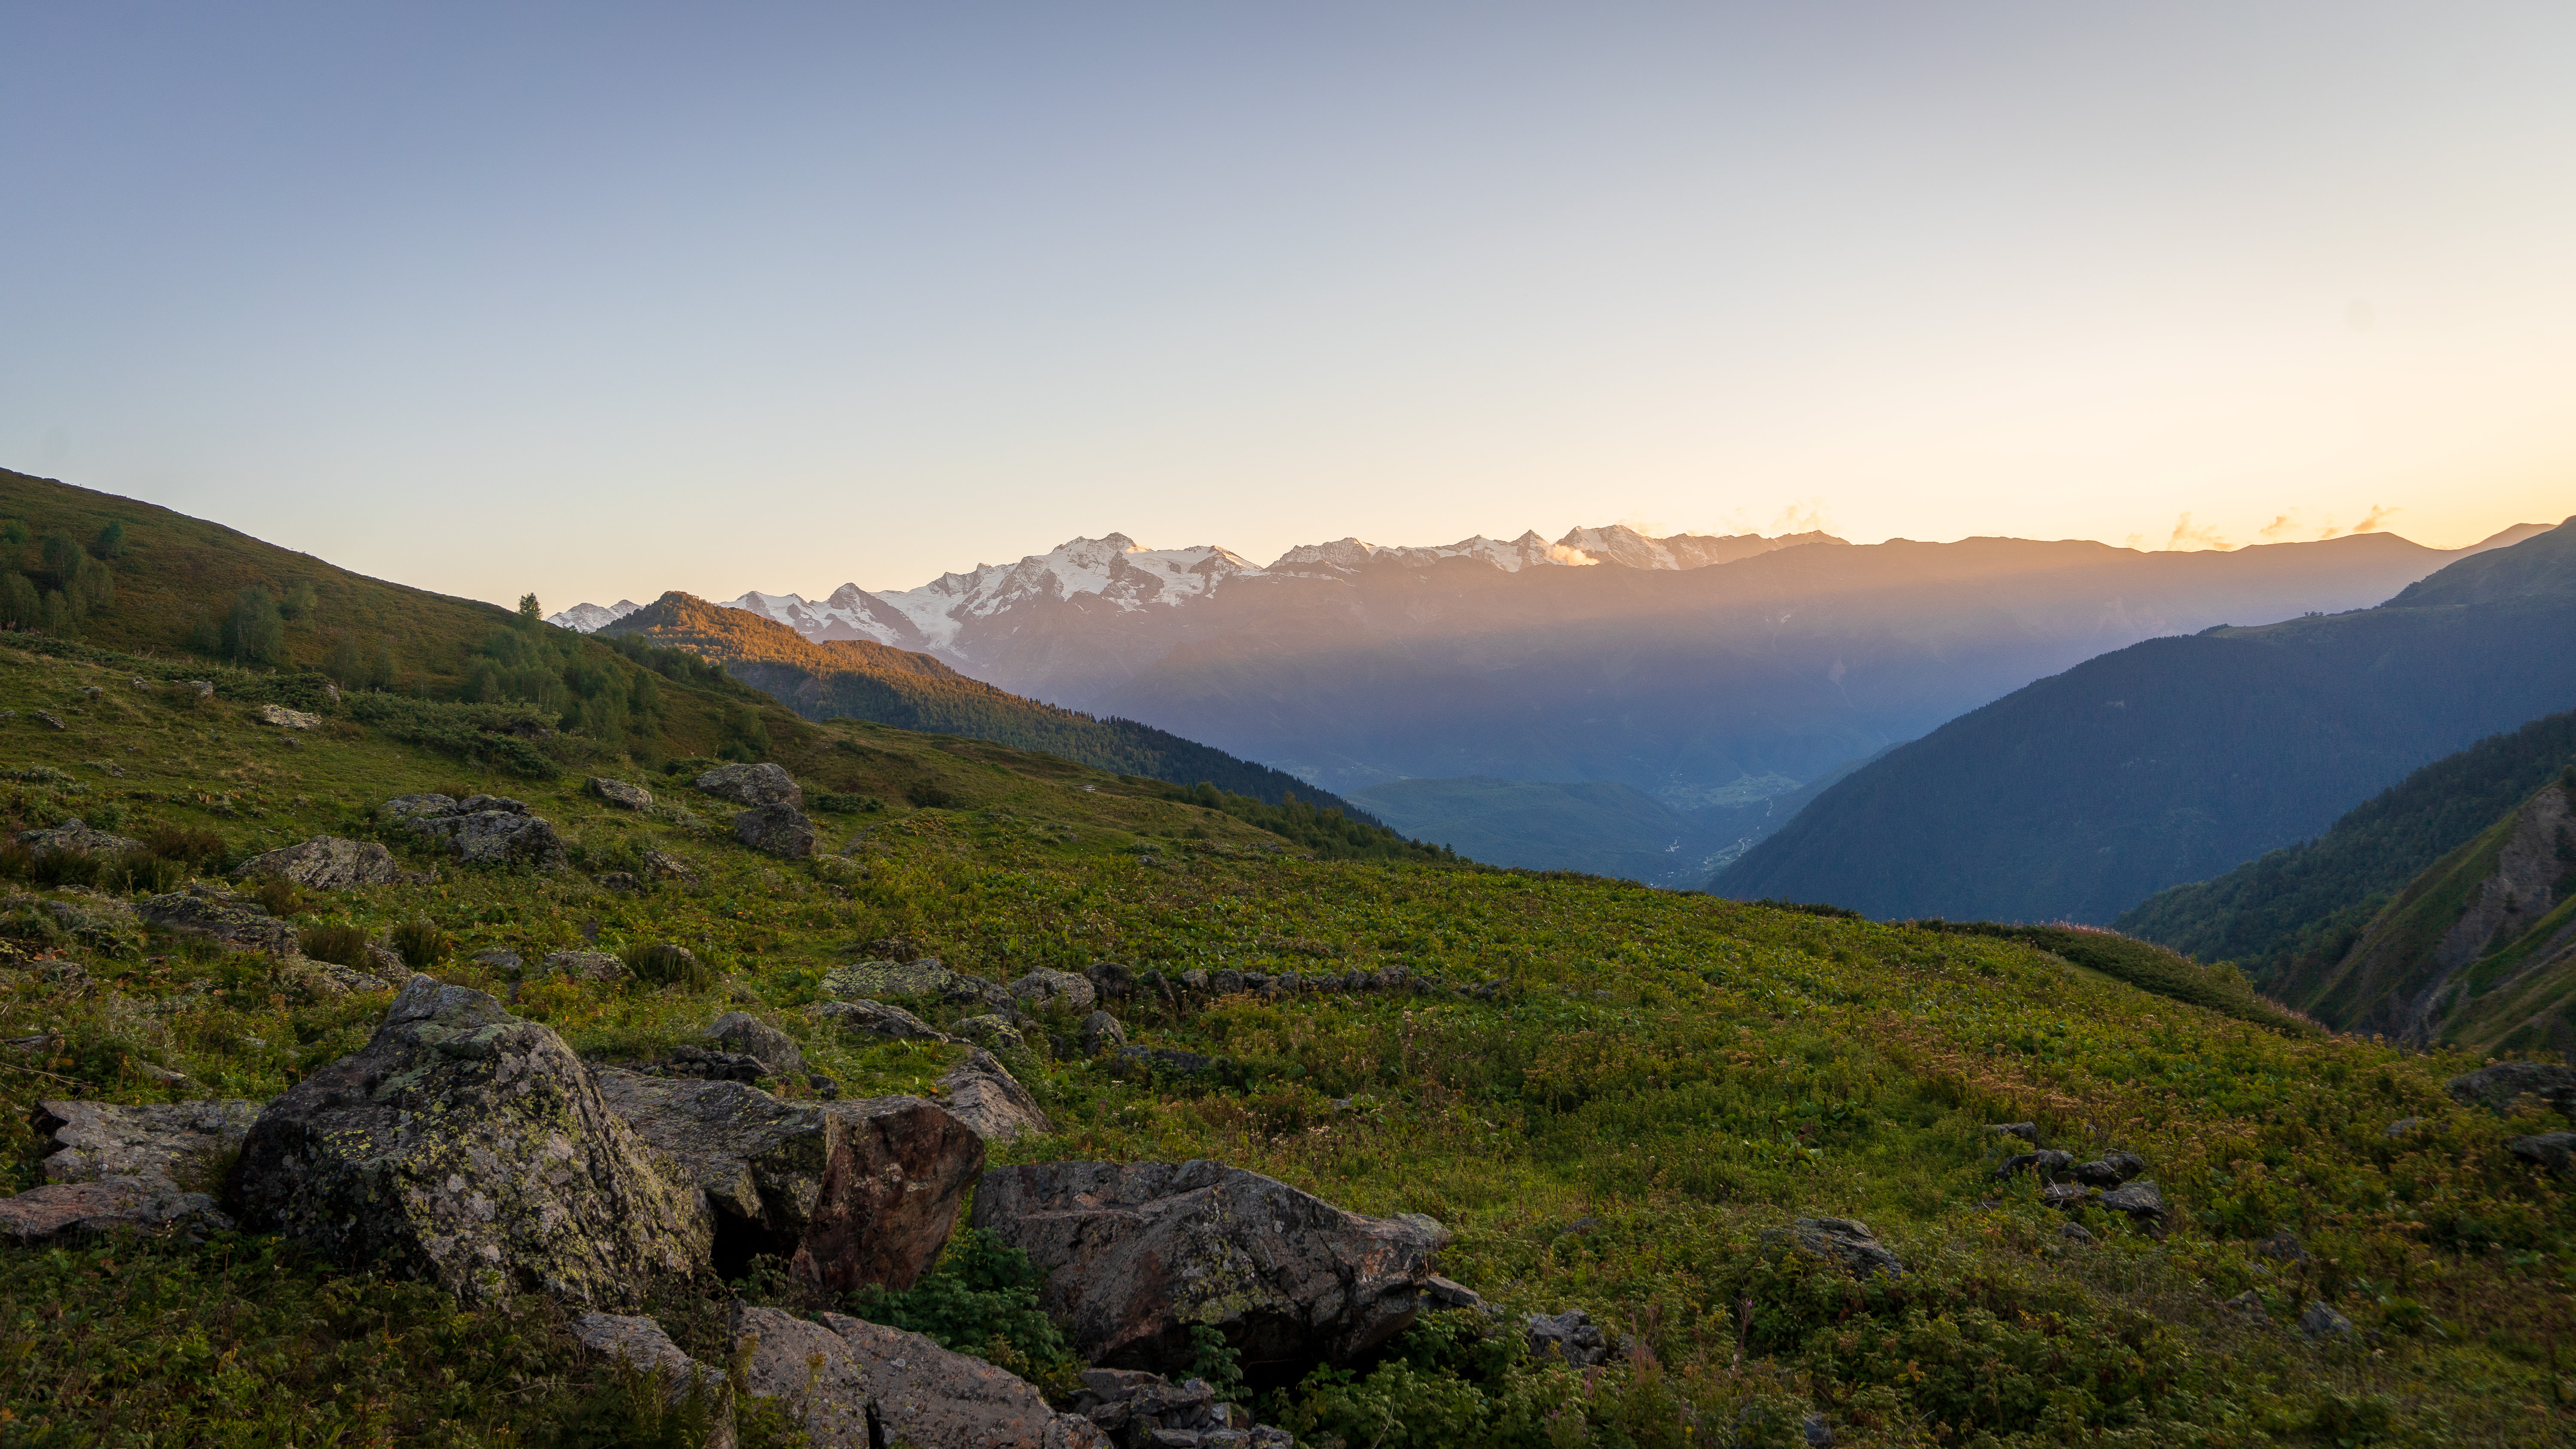 Svaneti range from the trail to the Guli glacier